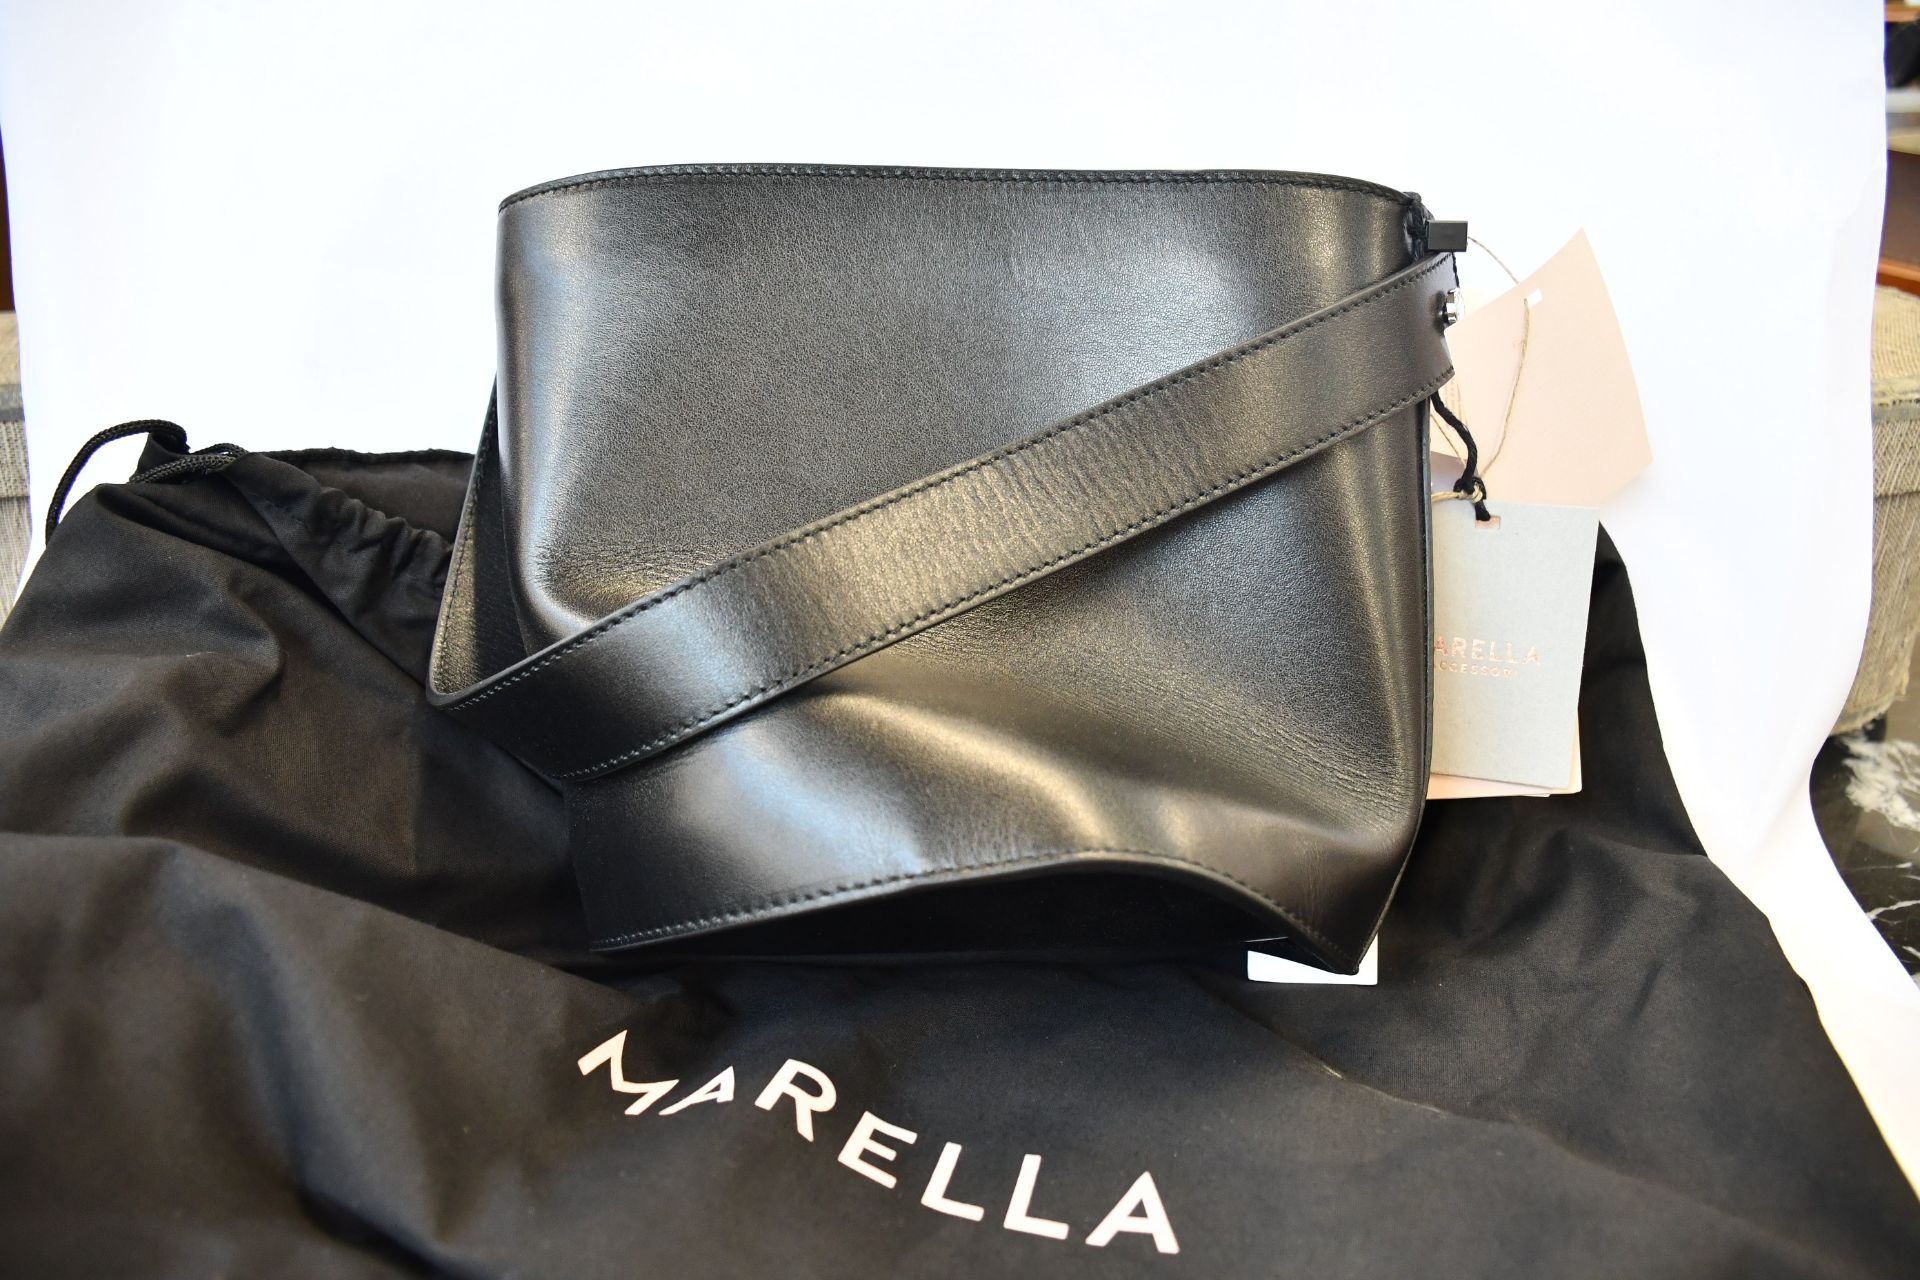 An as new Marella handbag.